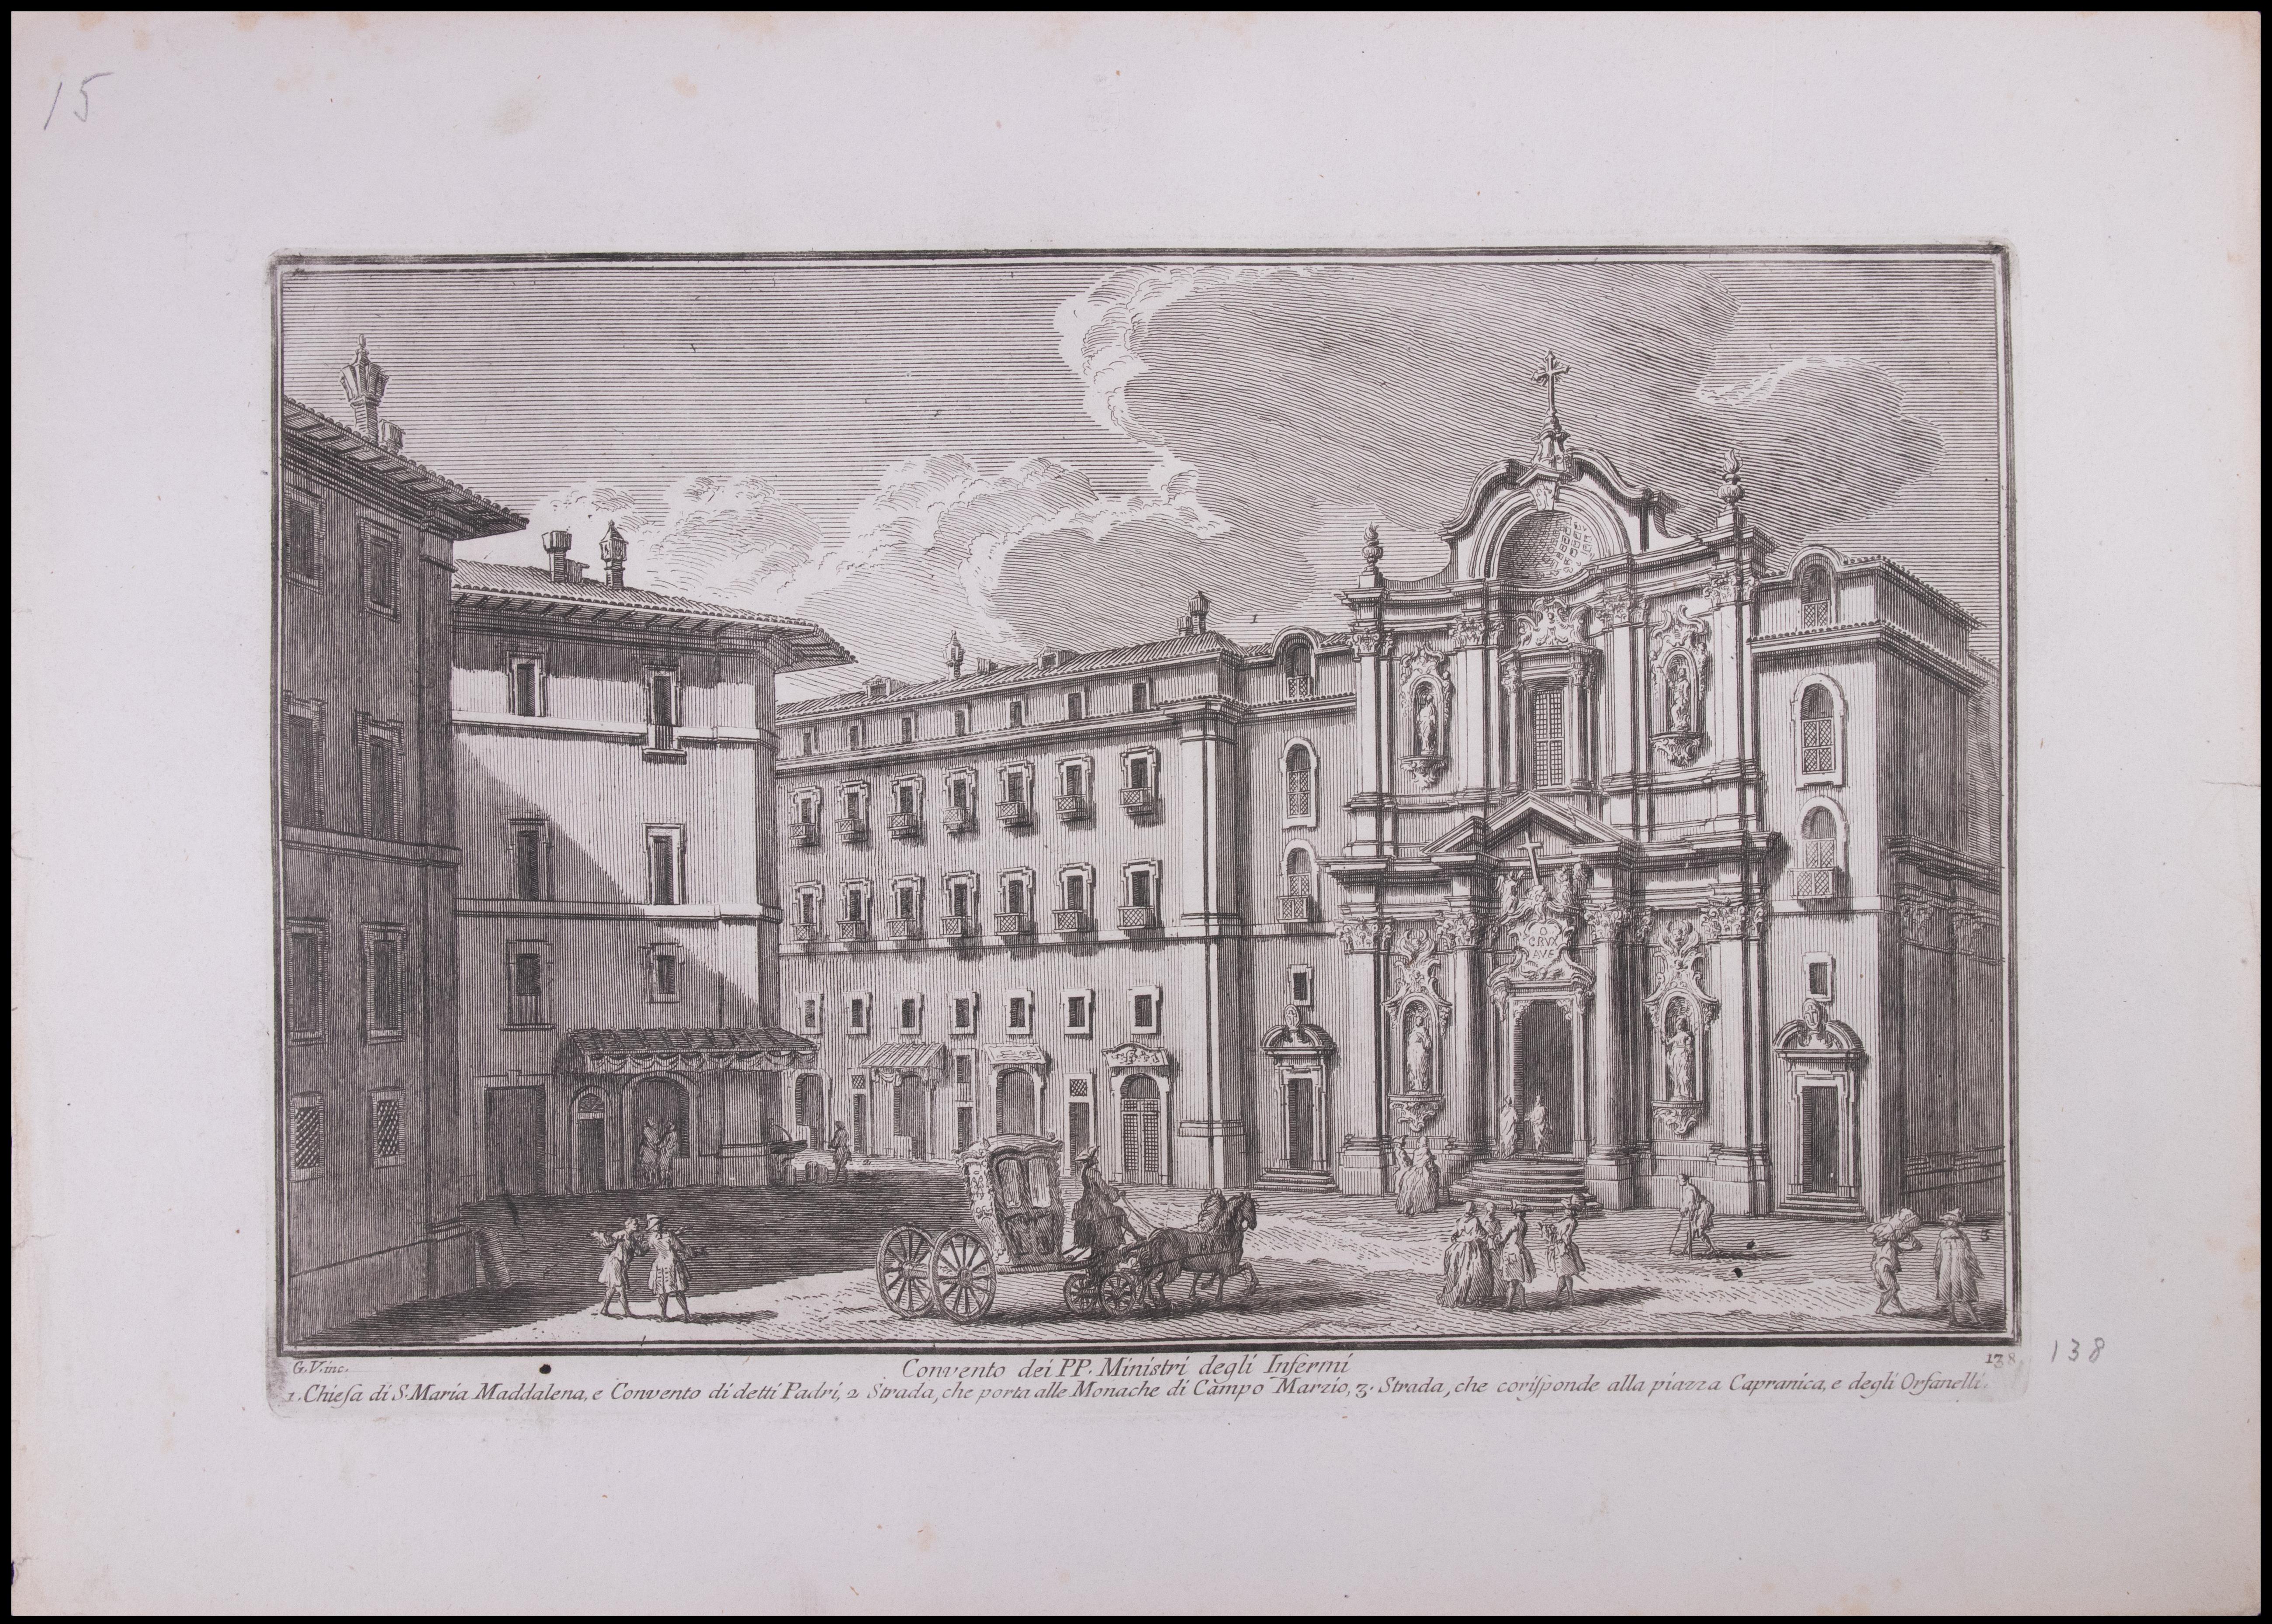 Giuseppe Vasi Landscape Print - Convento dei PP.Ministri degli Infermi - Etching by G. Vasi - 18th Century